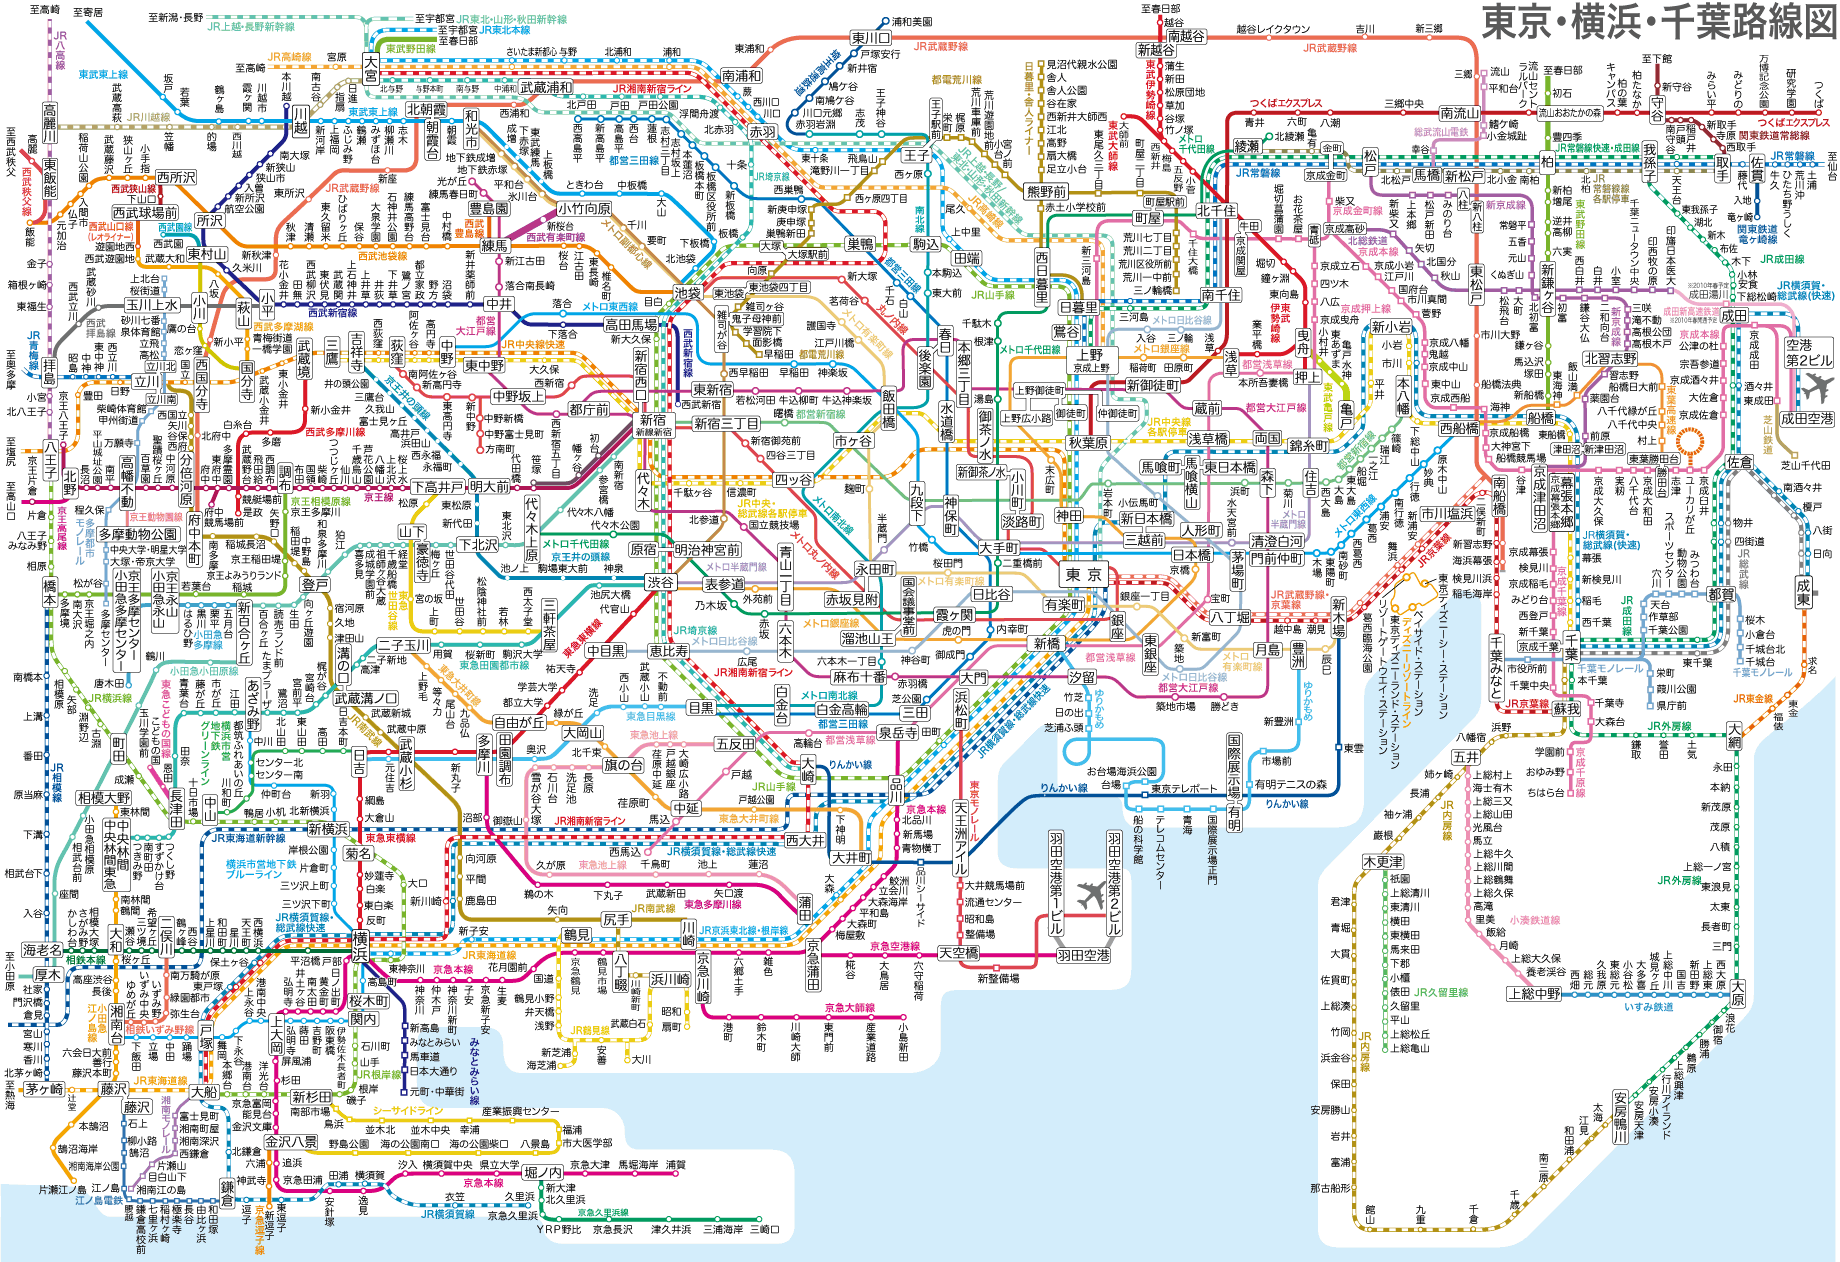 关于东京地图! - 《都市运输》 - 3dmgame论坛